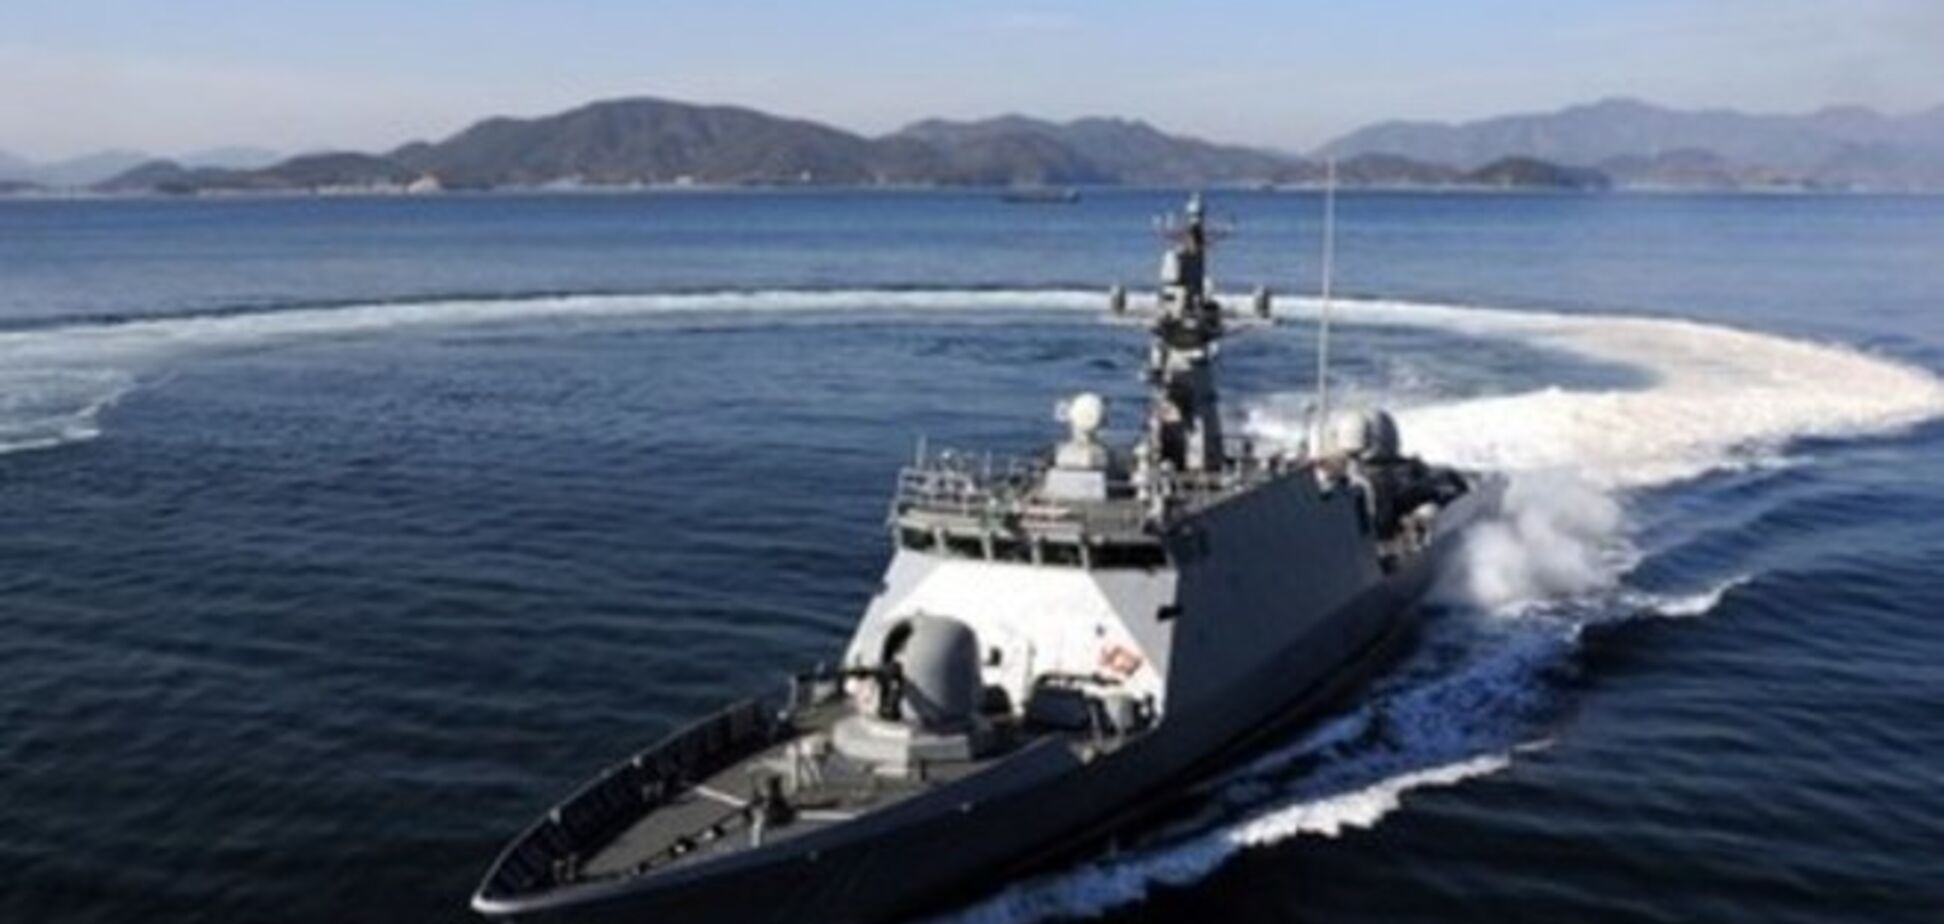 Кораблі КНДР і Південної Кореї вступили в морський бій